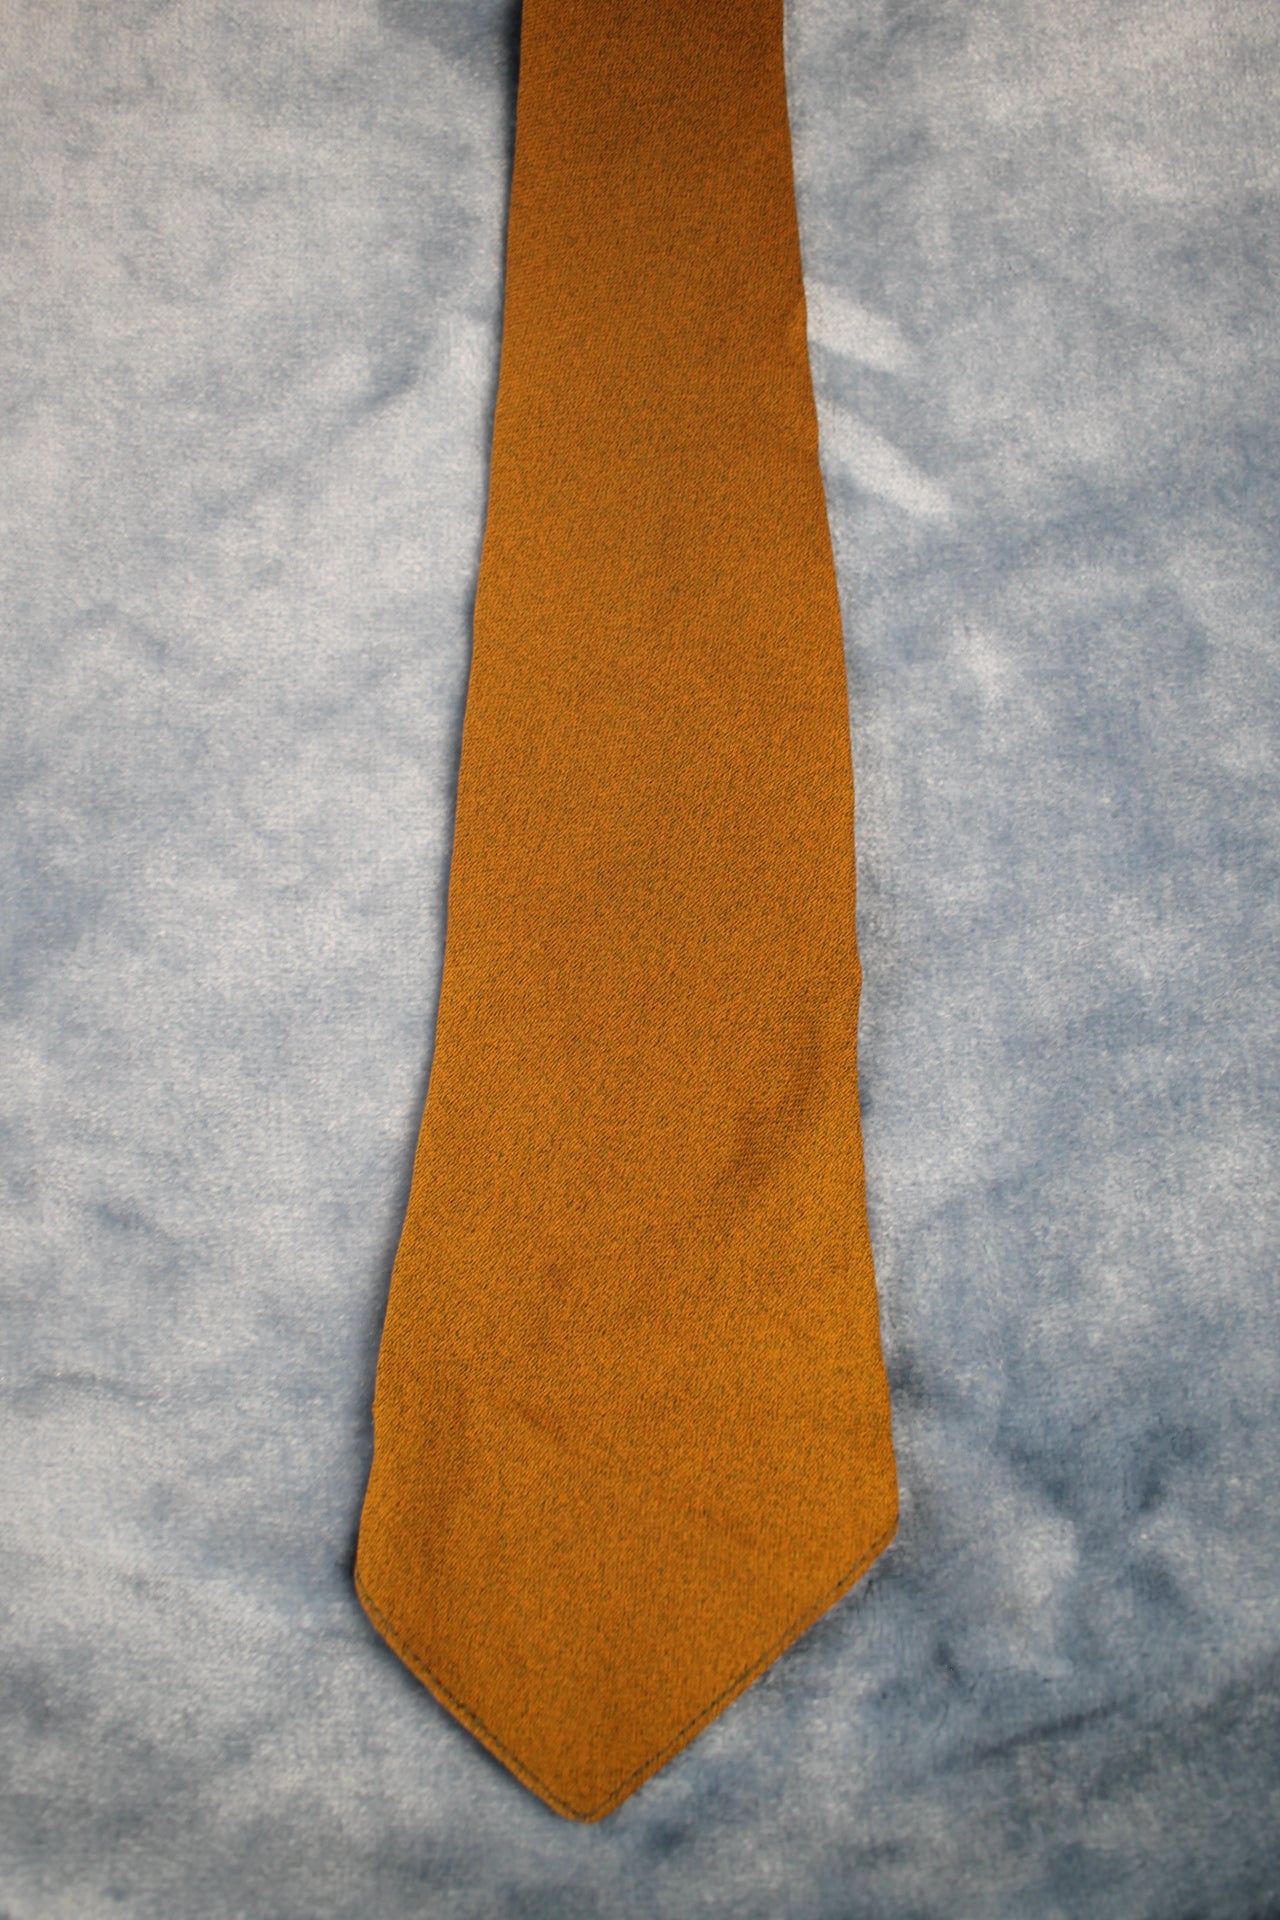 Vintage 1940s/50s khaki tan speckled unlined swing tie